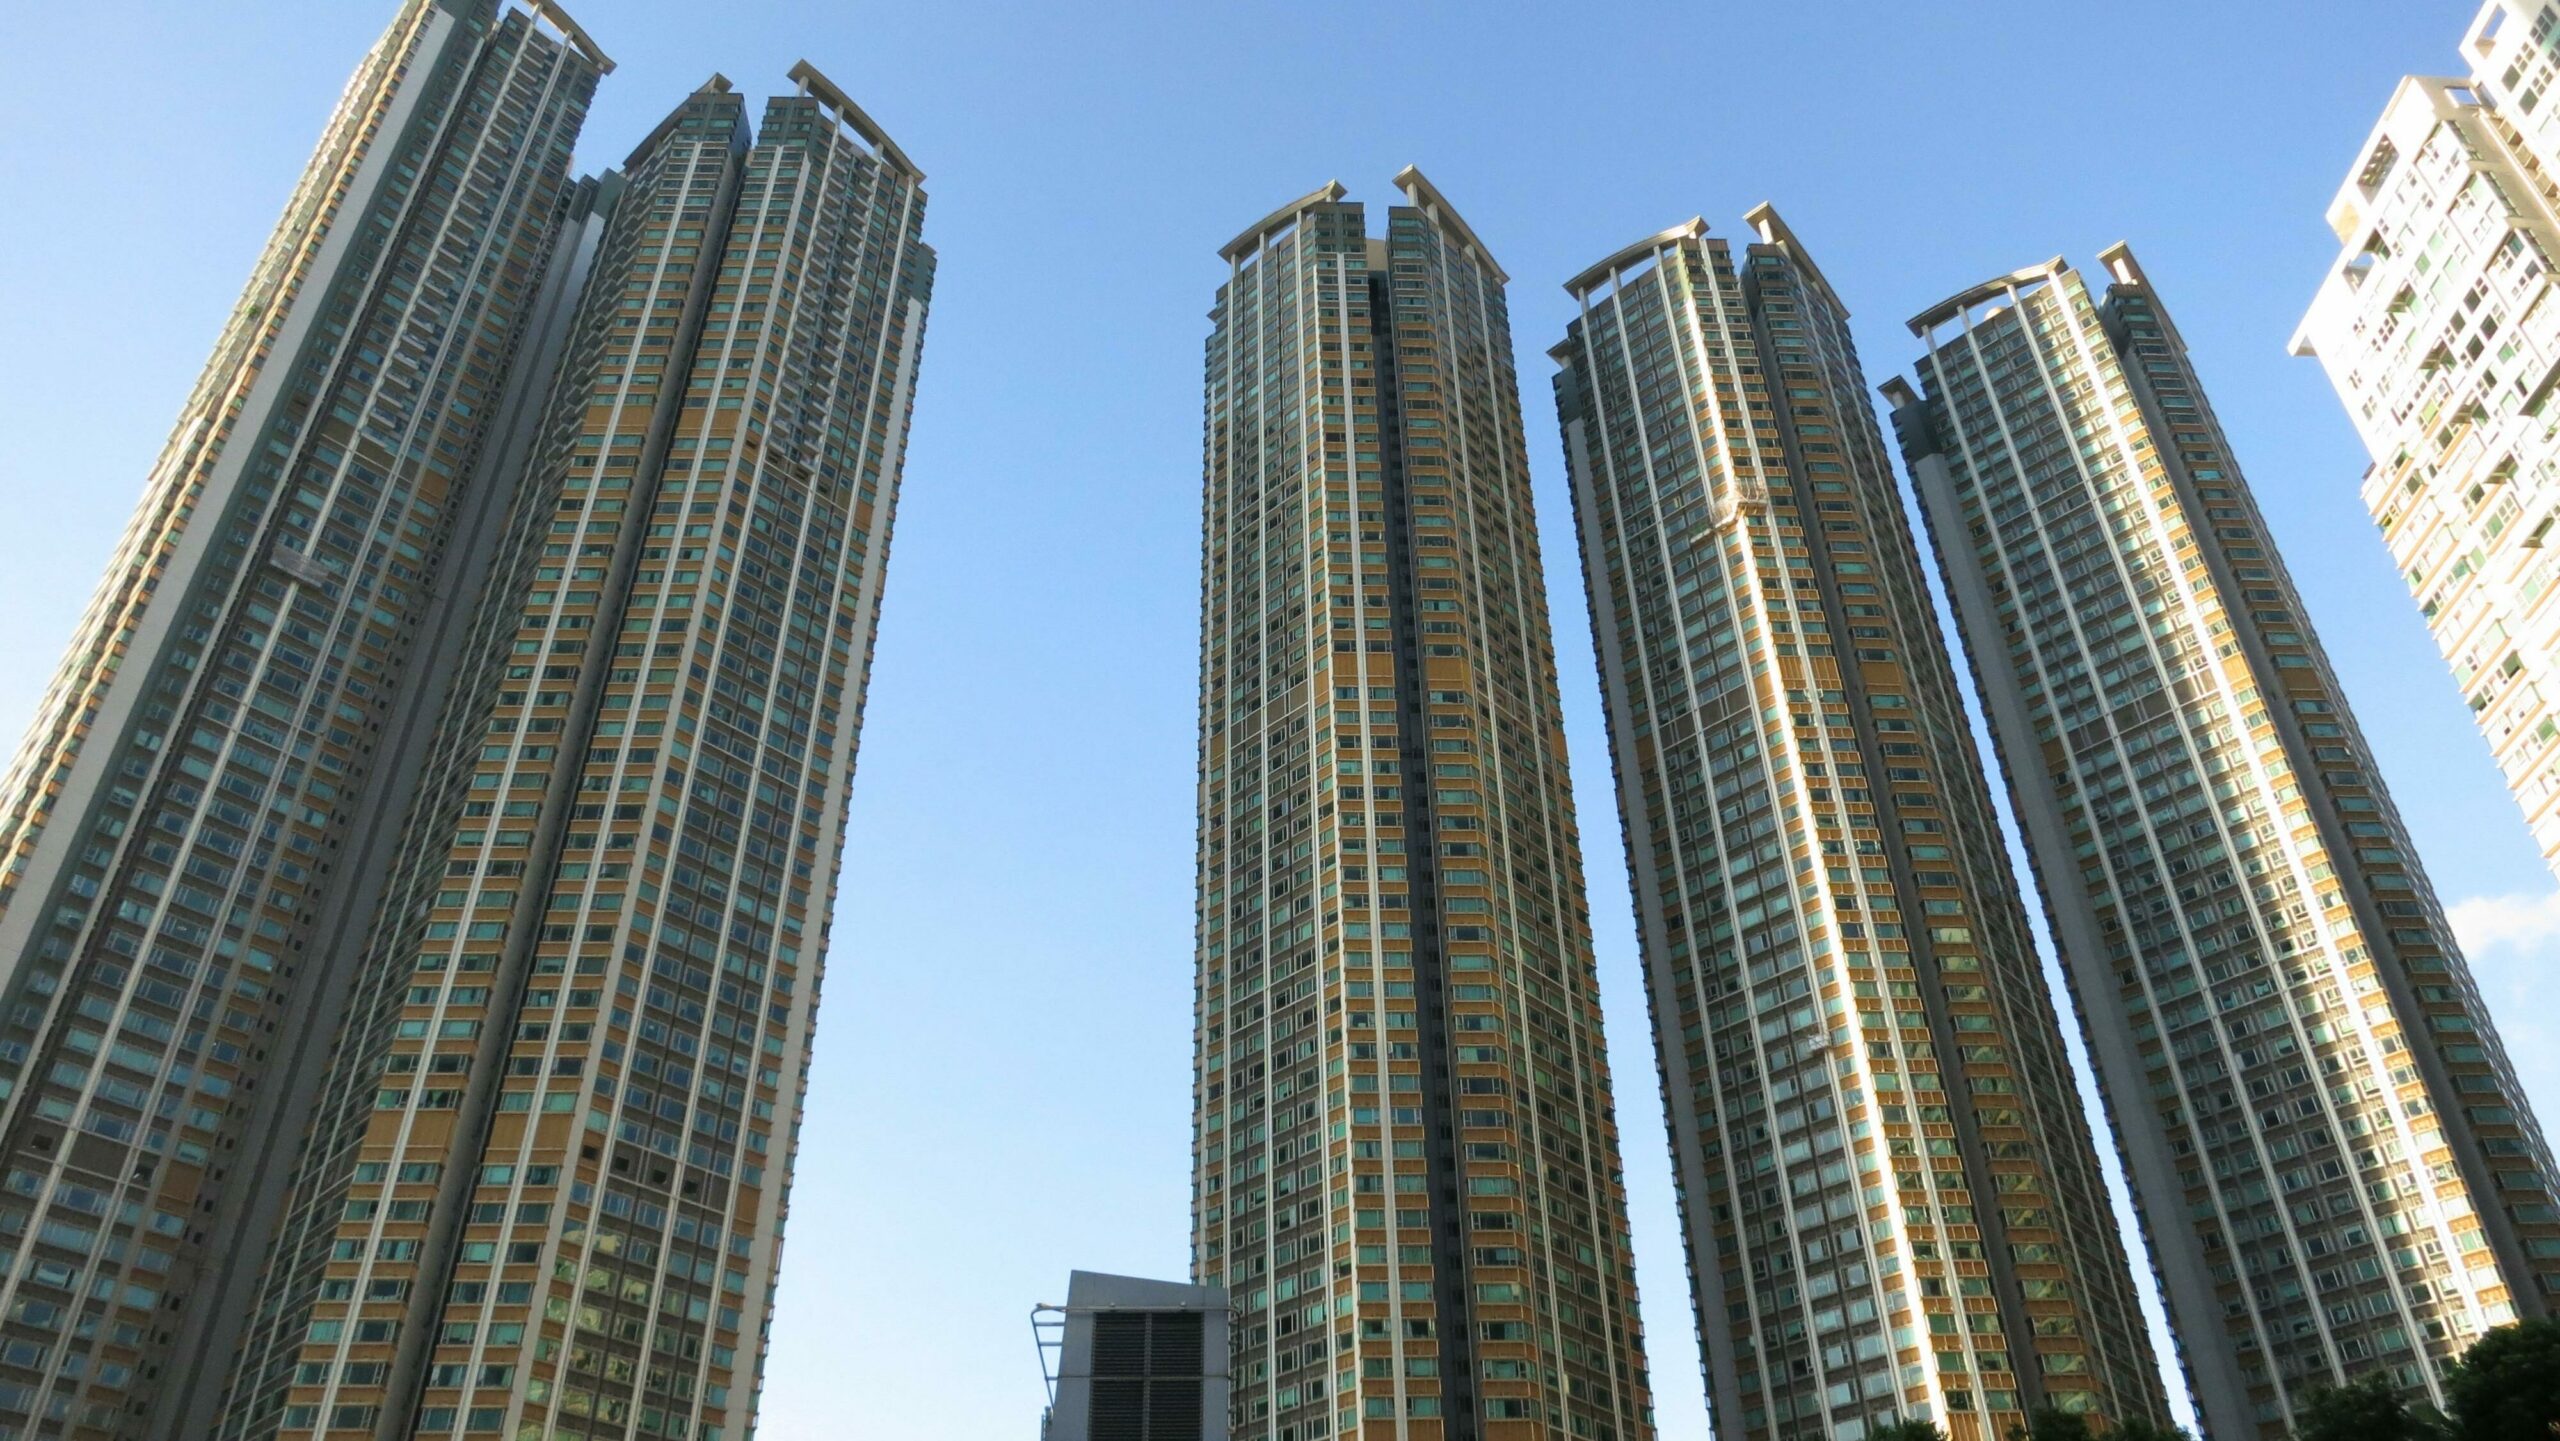 香港中小型業主會創辦人呂宇健最近以1,820萬元出售了他在九龍站擎天半島的一個兩房單位，比他在2020年購入時低了60萬元。投資房地產並不總是能賺錢的選擇，投資者應謹慎考慮風險和回報。